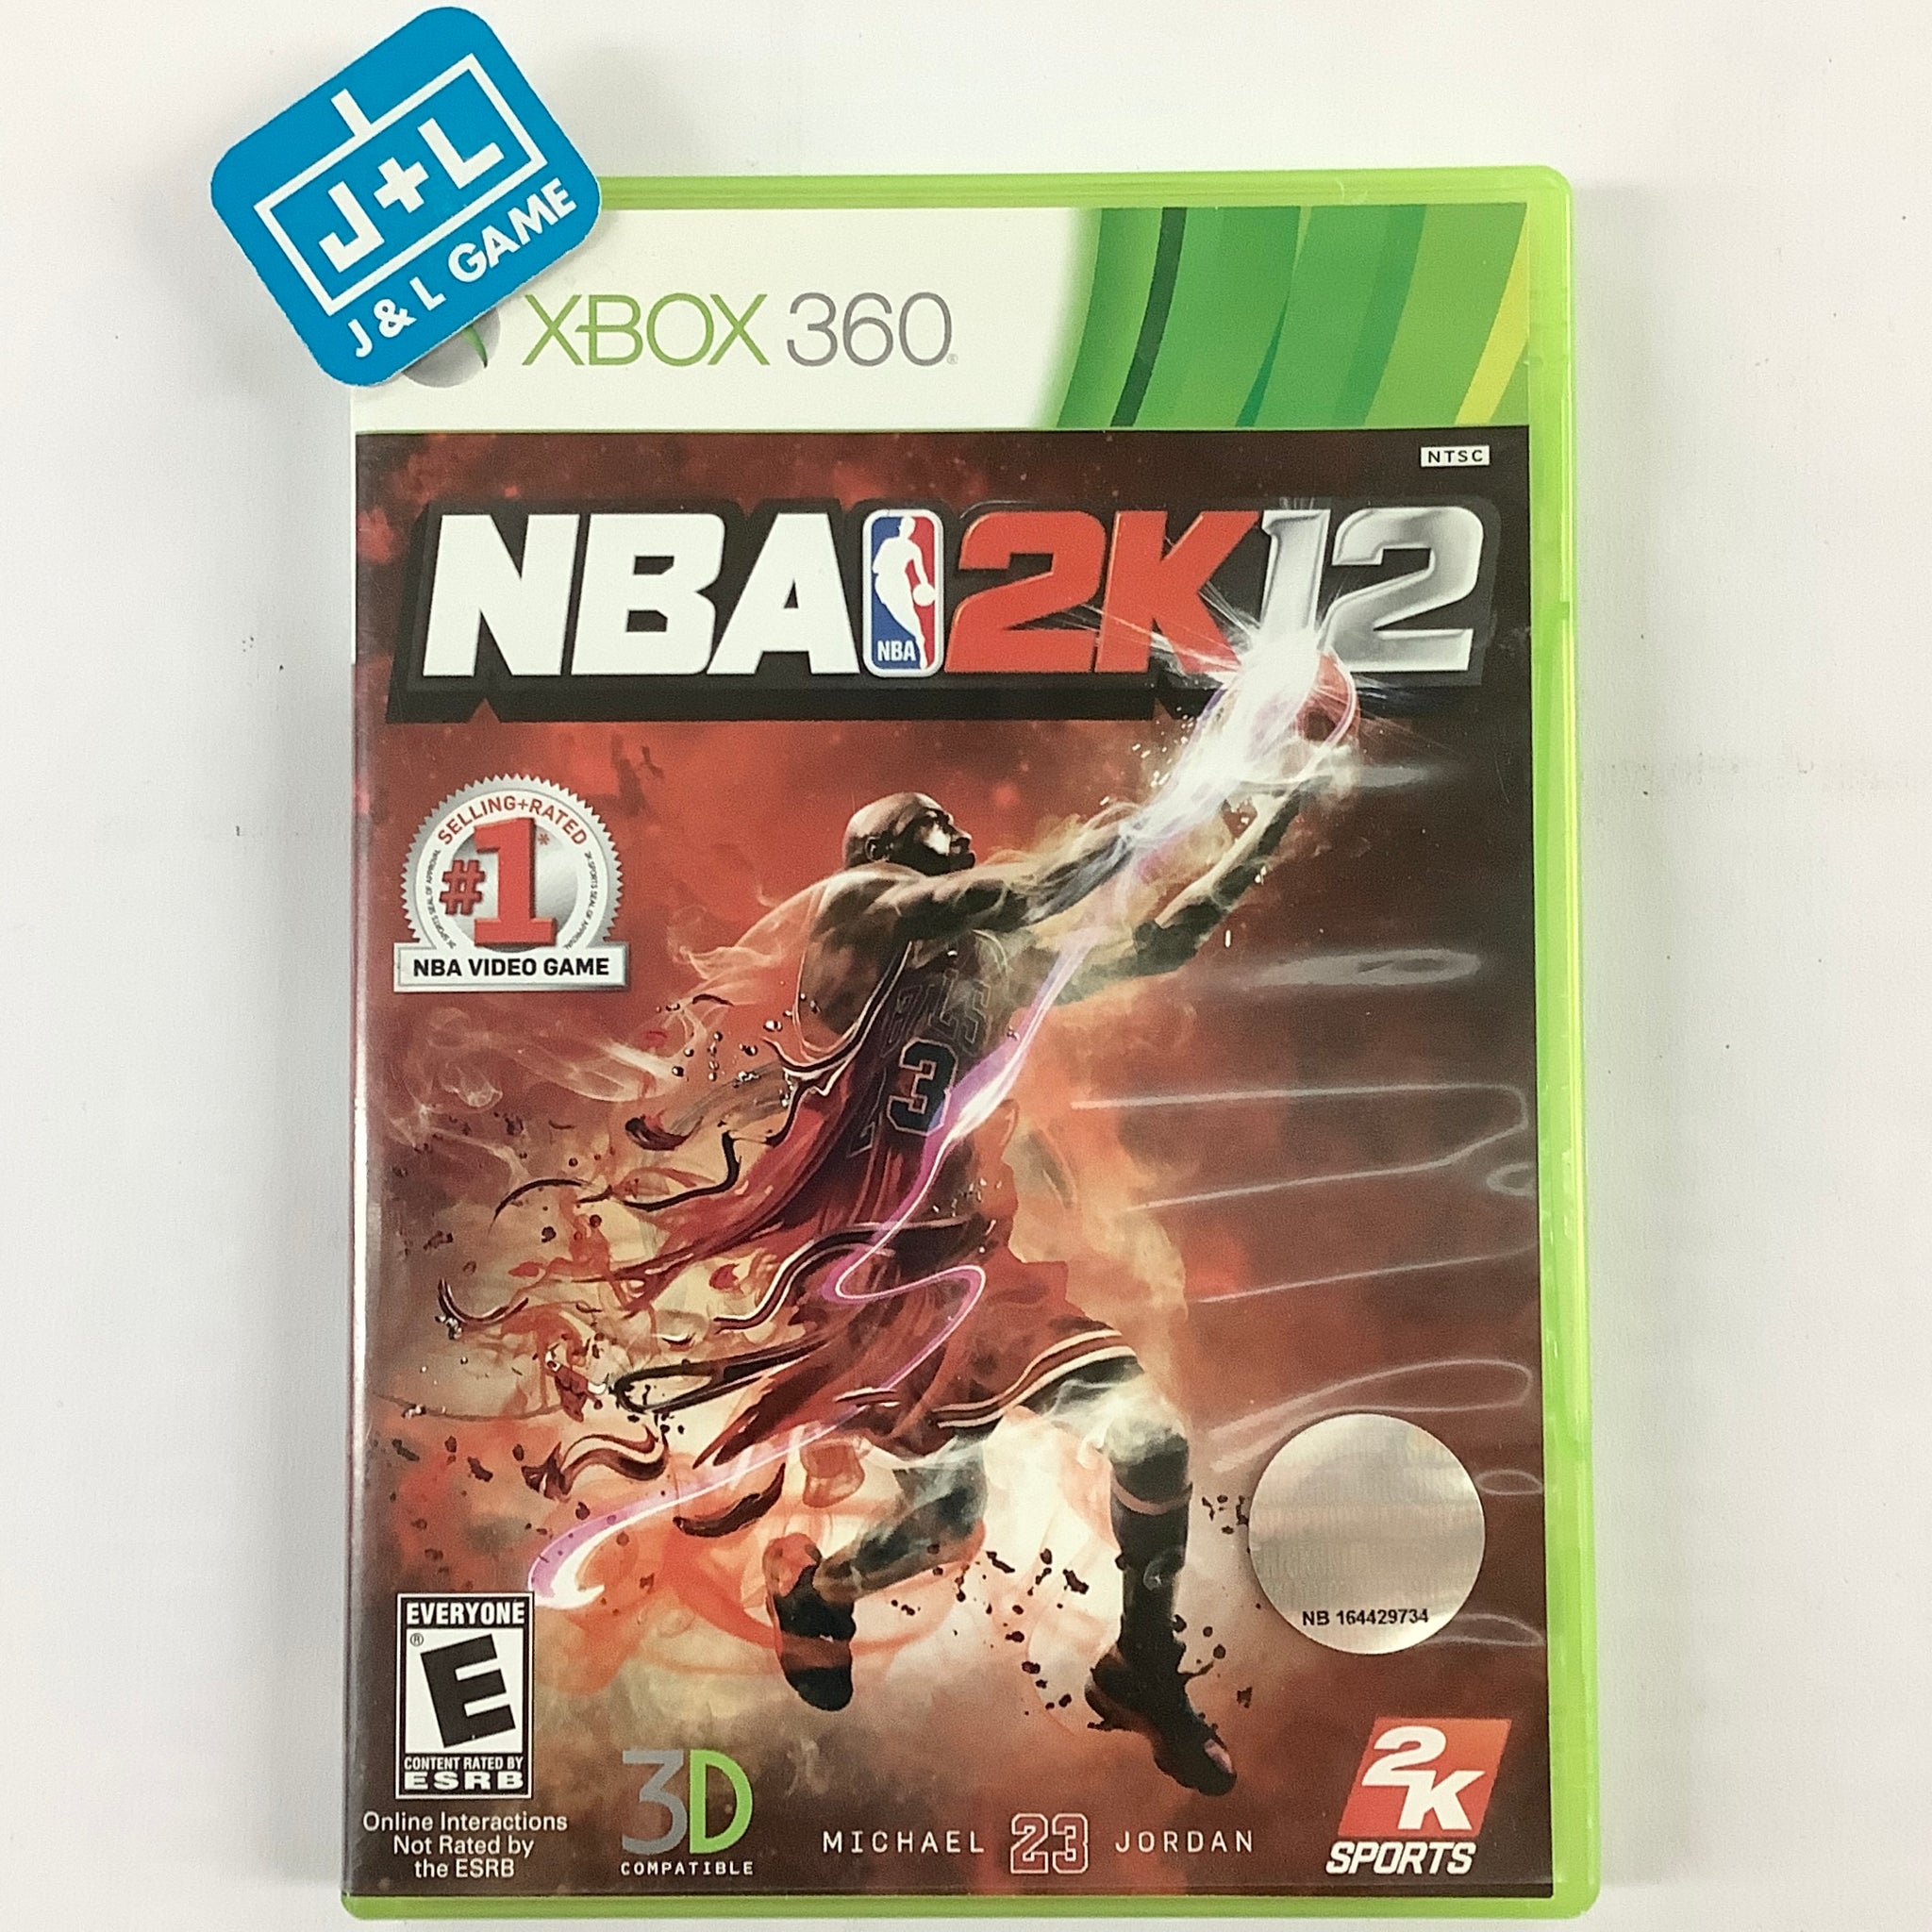 NBA 2K12' cover art to feature Bird, Magic, Jordan 